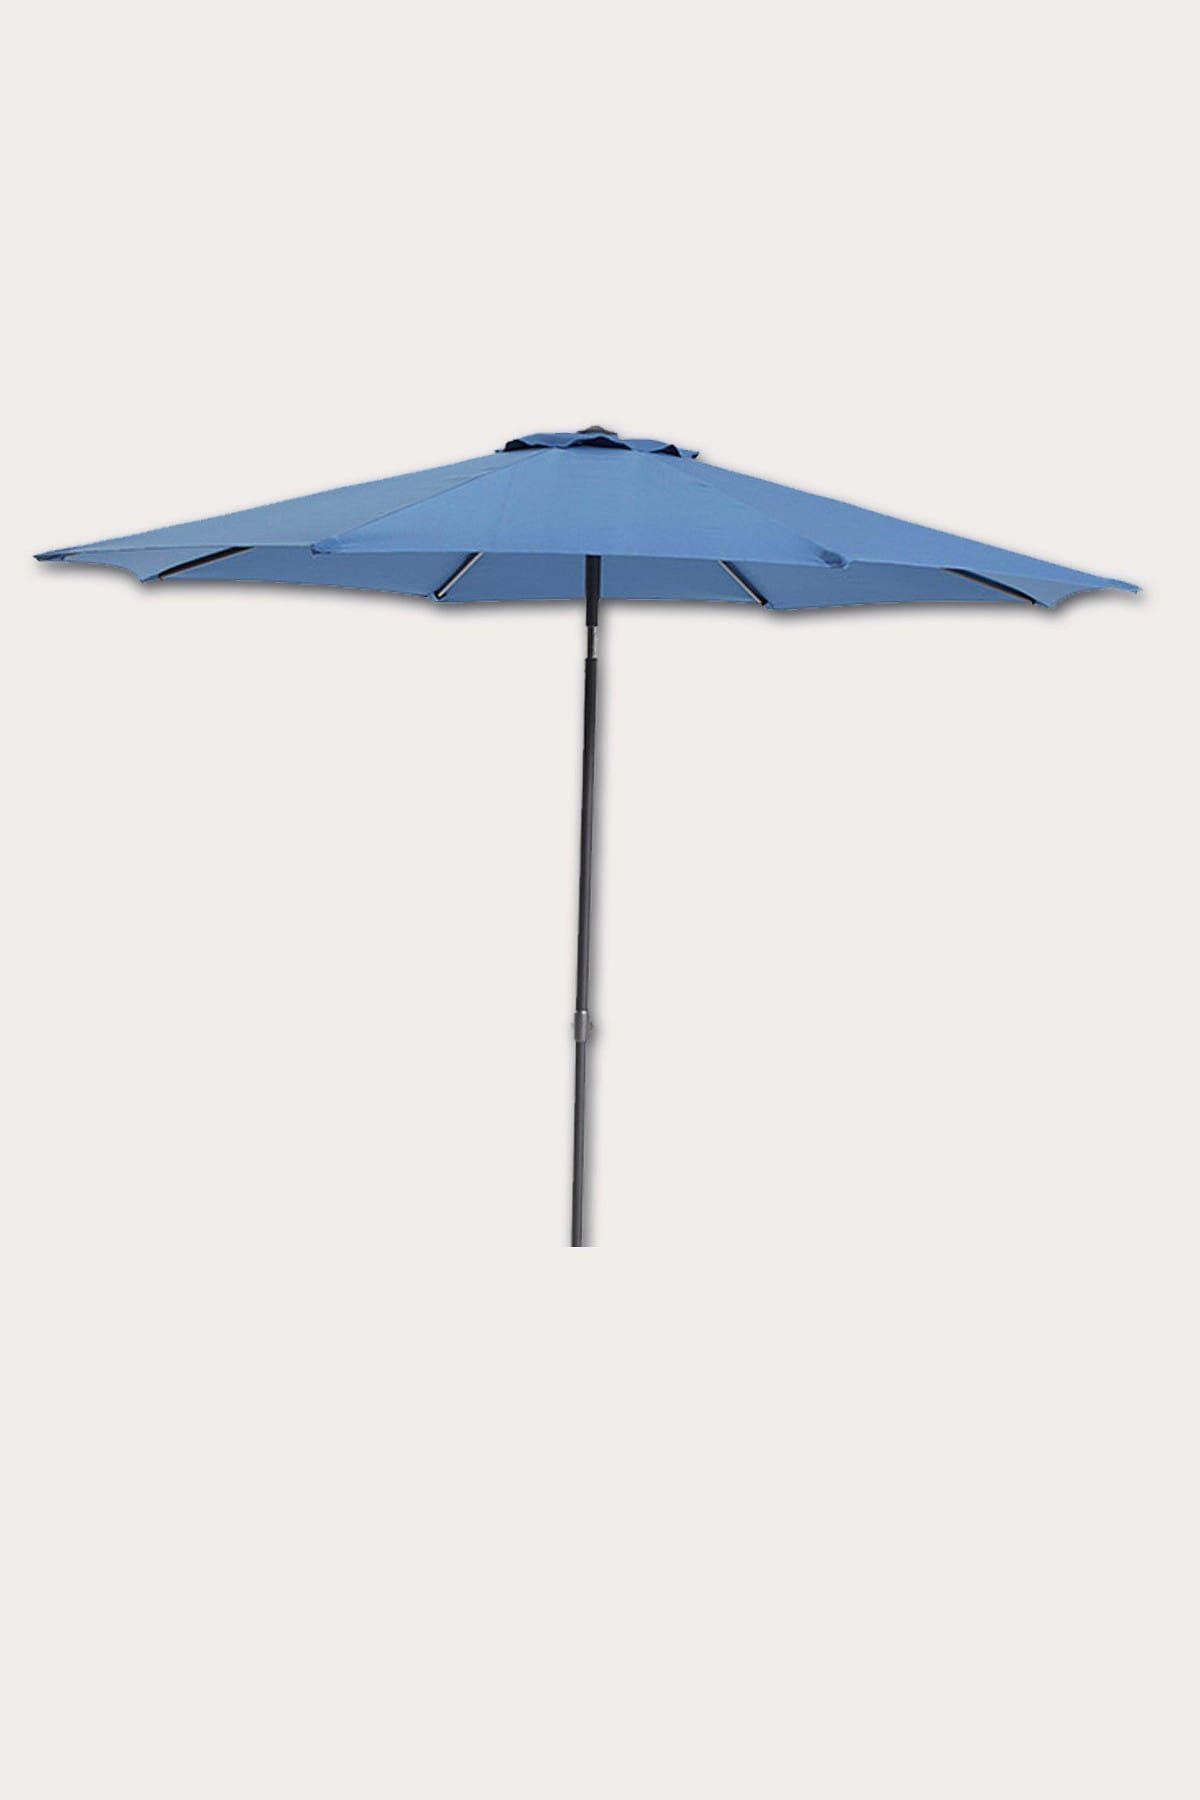 Sunfun Yuvarlak Balkon, Bahçe Şemsiyesi 270 cm Polyester Kumaş Mavi